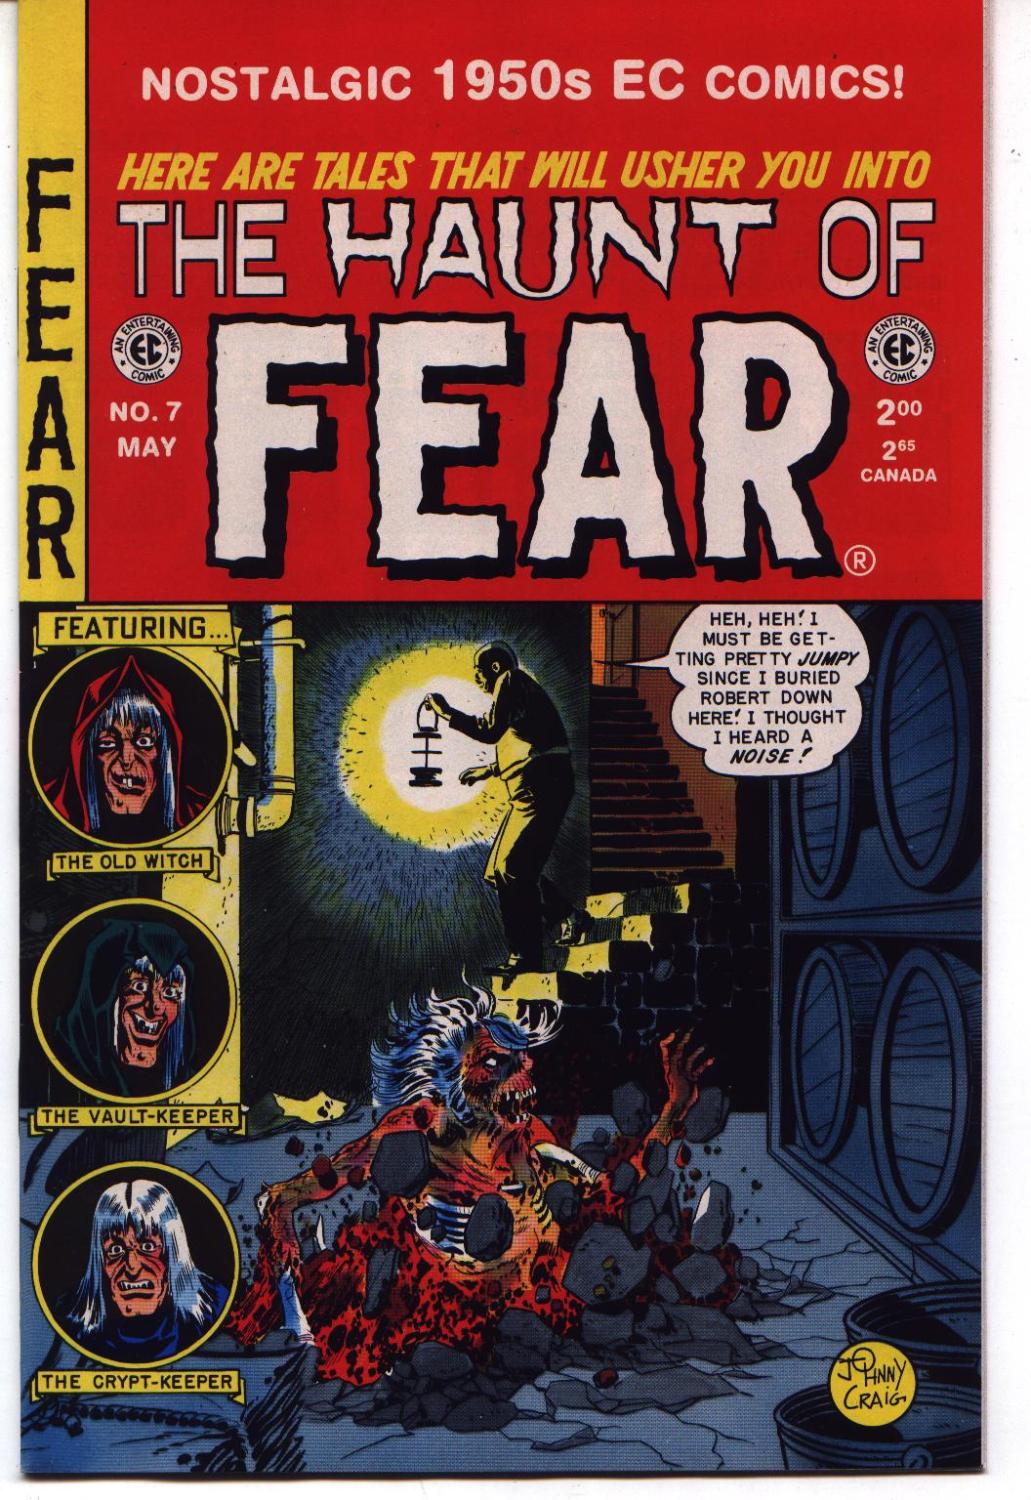 Haunt of Fear #12 EC Comics Tales from the Crypt East Coast Comix 1973 Reprint